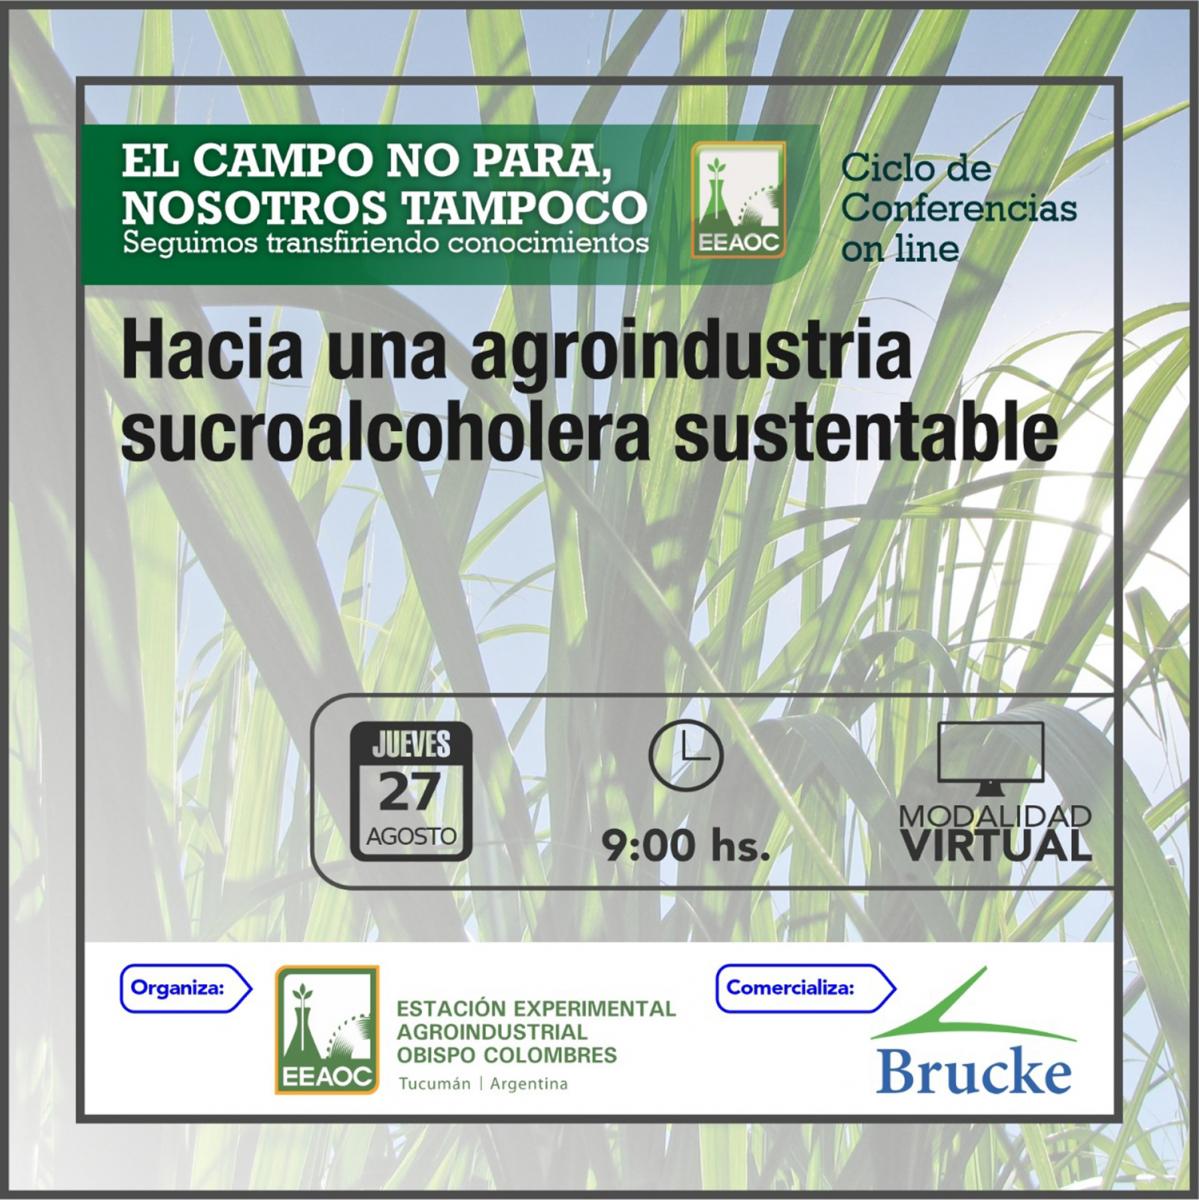 La agroindustria sucroalcoholera sustentable será el eje de una capacitación de la Eeaoc